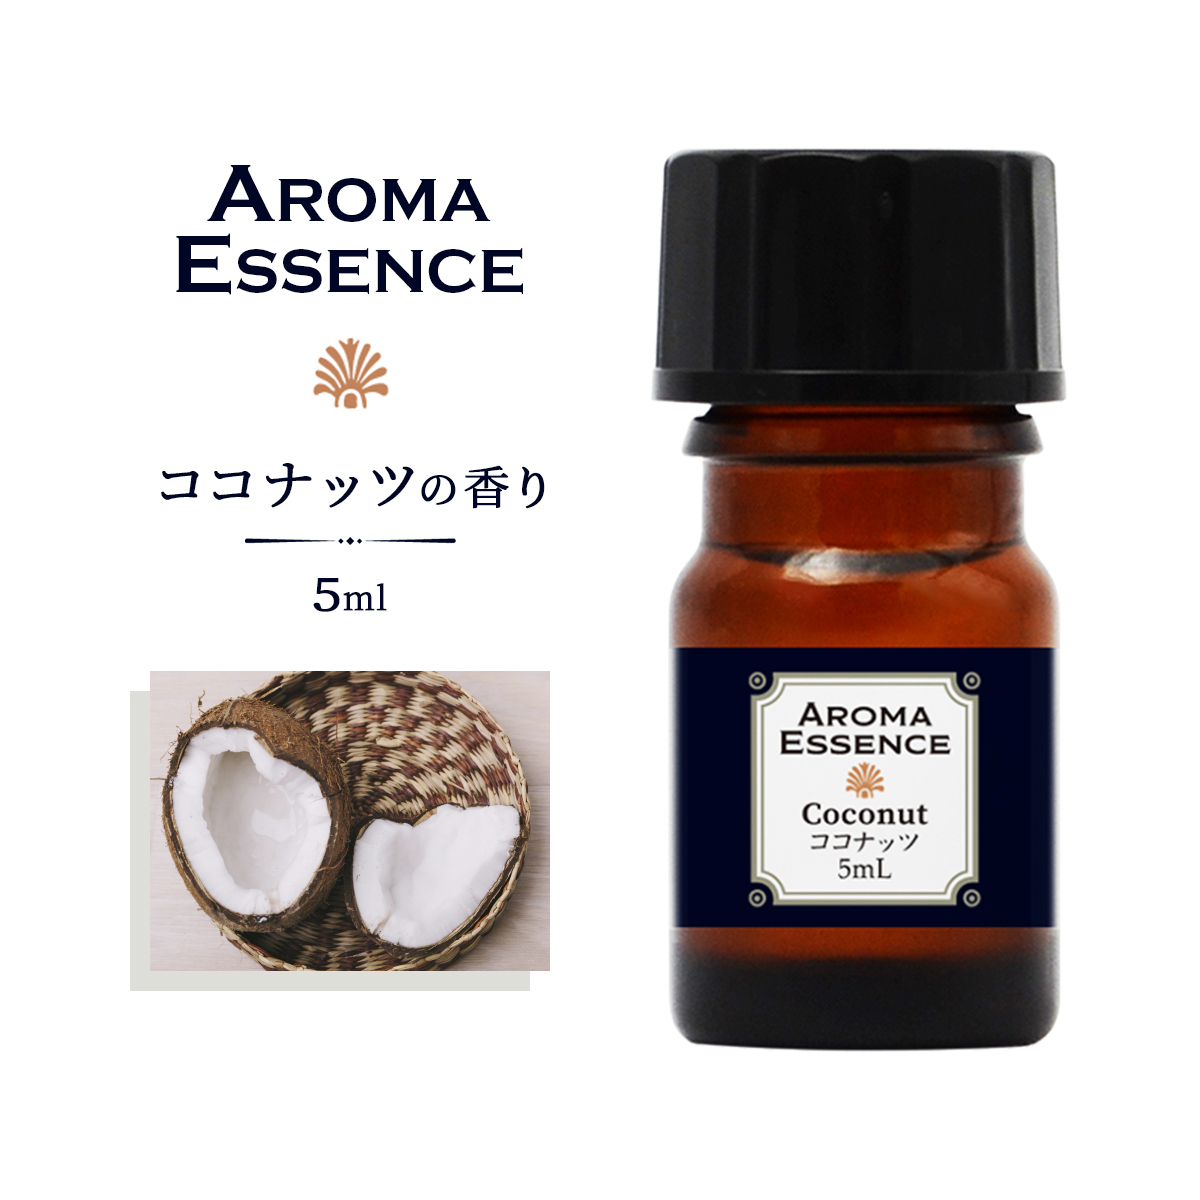 アロマオイル ココナッツ 5ml 香り アロマエッセンス 調合香料 芳香用 ルームフレグランス アロマポット リードディフューザーの画像1